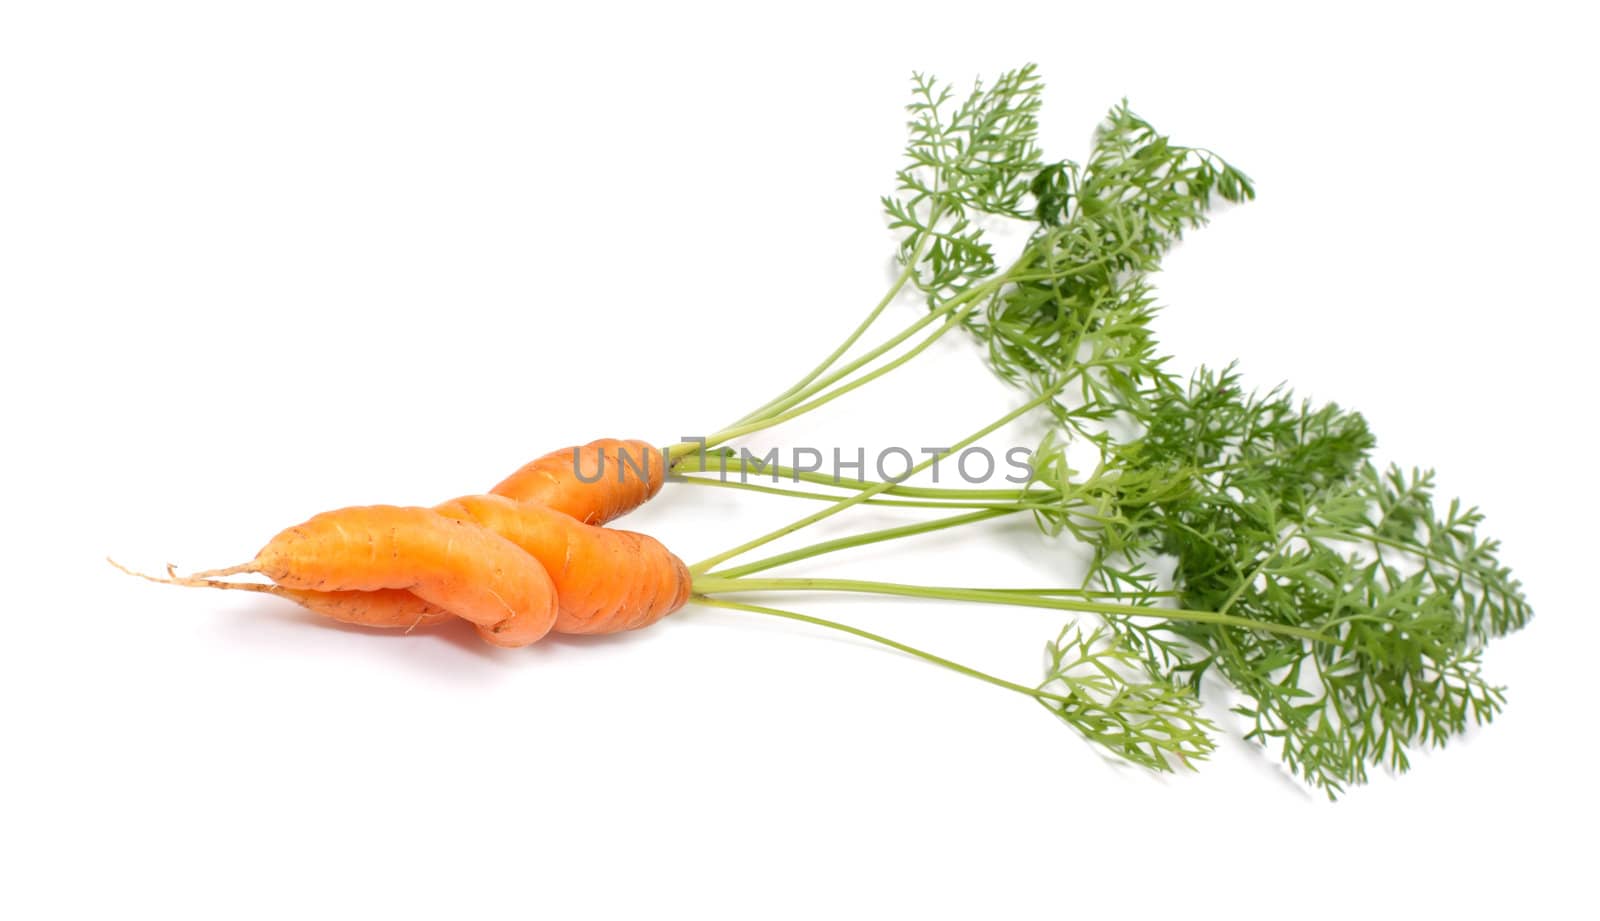 Carrots. by kromeshnik